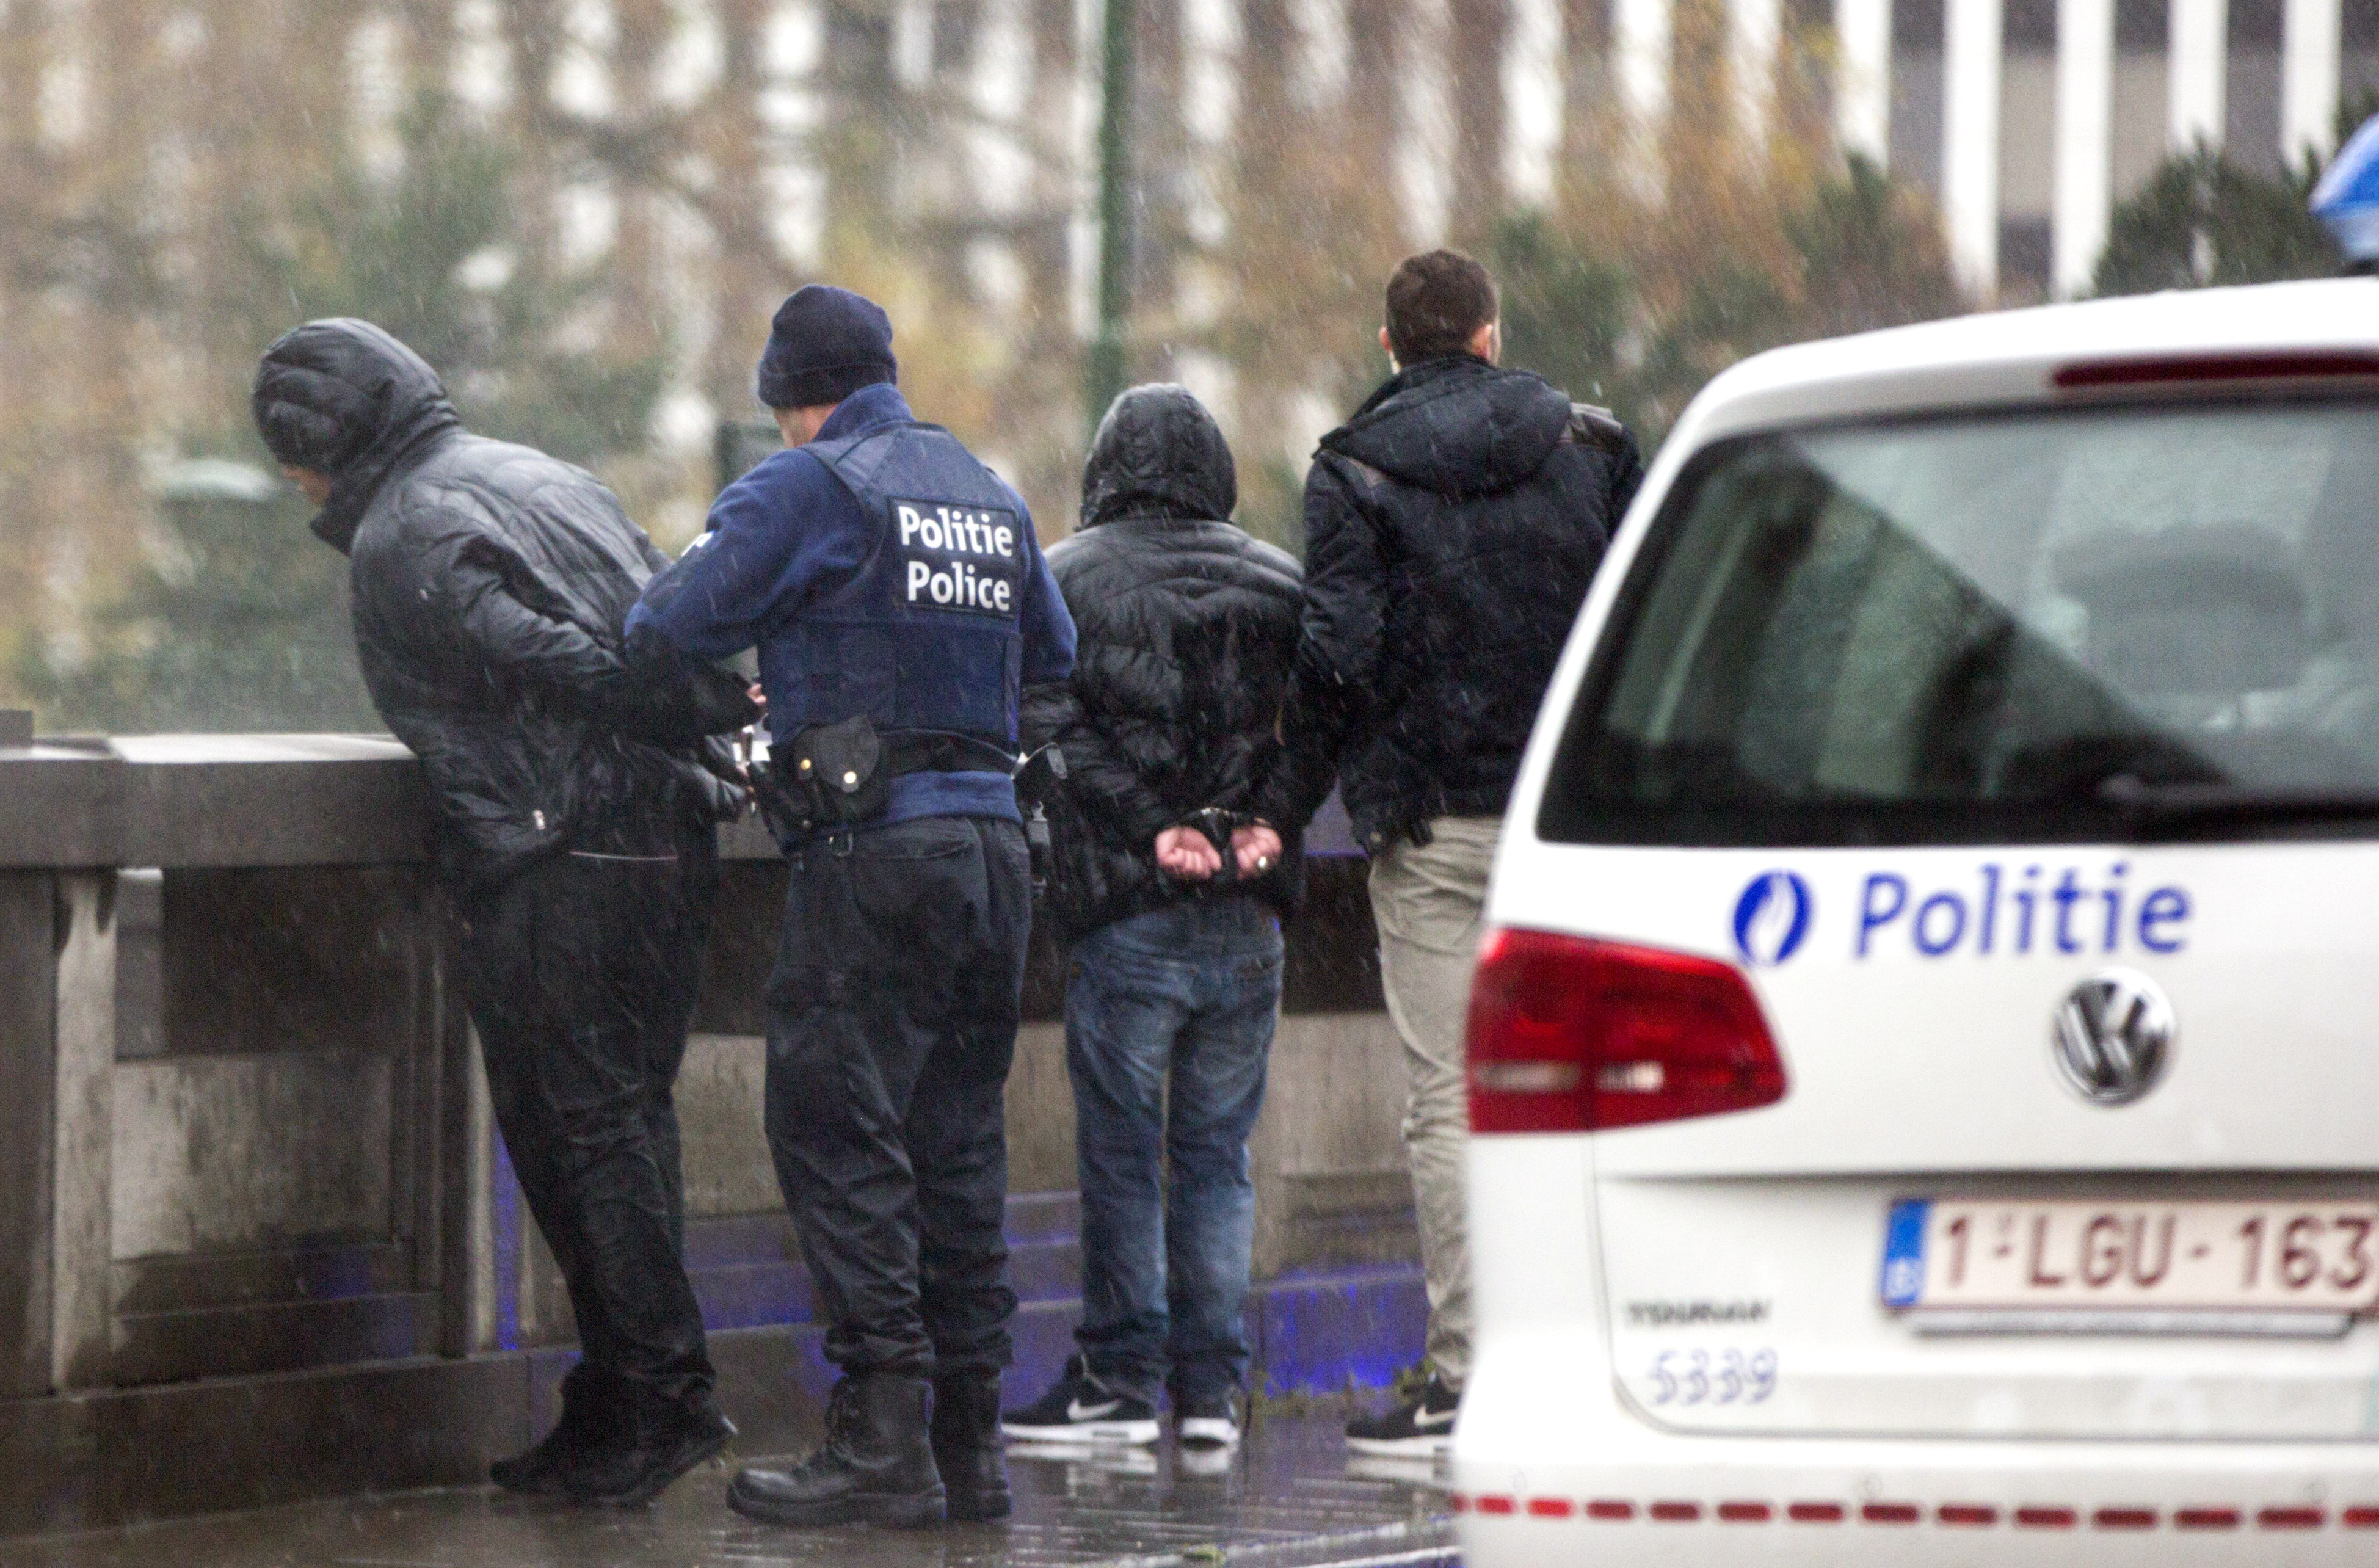 Hallan armas en domicilio de acusado por atentados en París